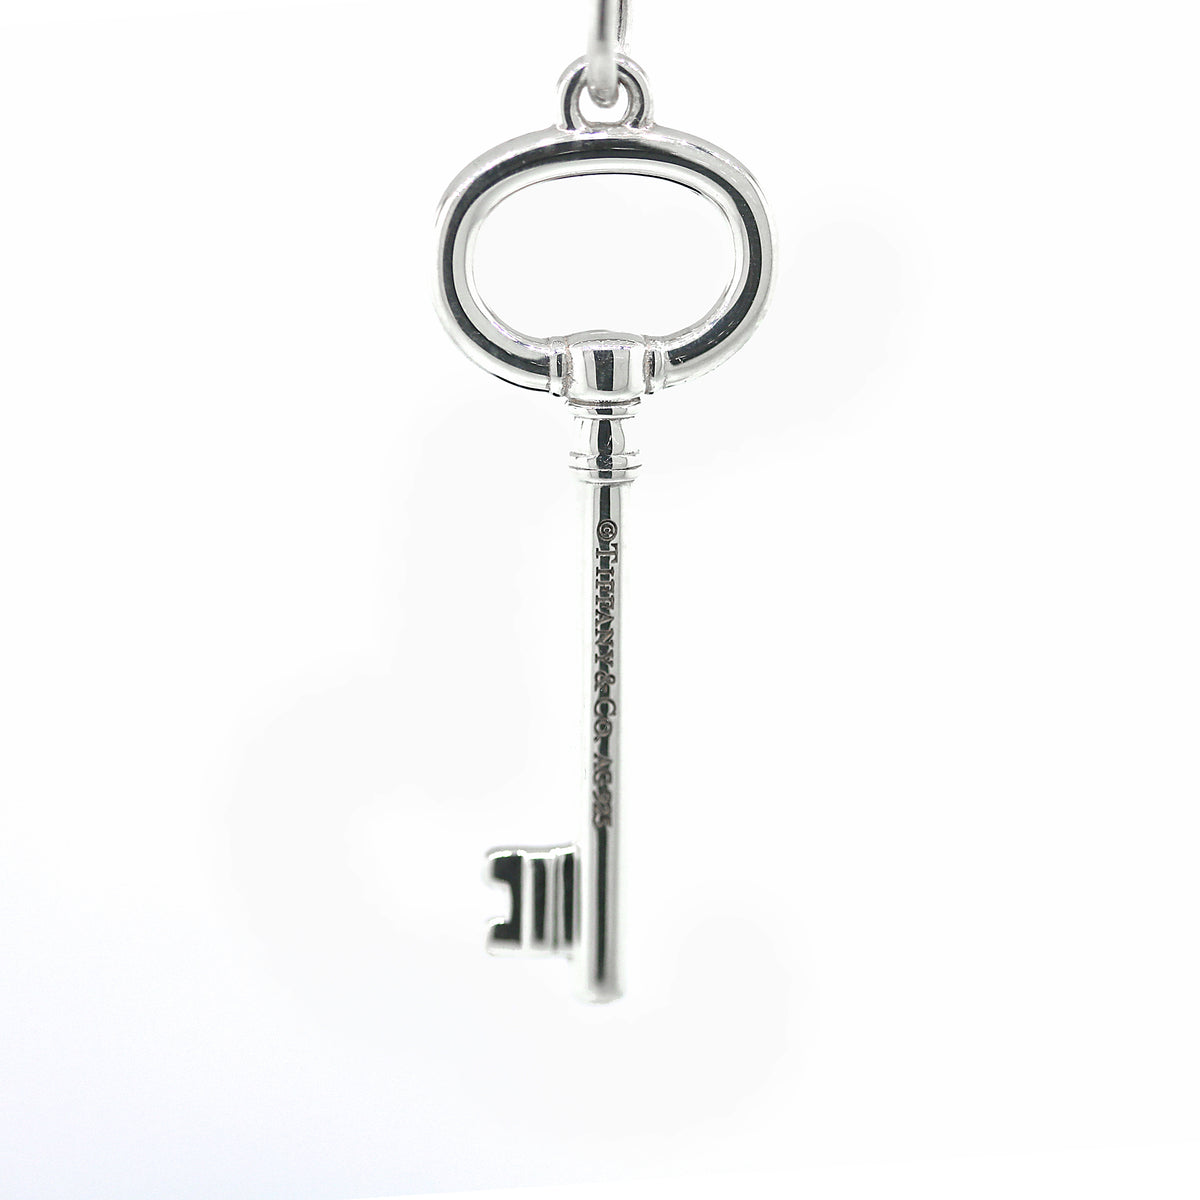 Tiffany & Co. Oval Key Pendant Necklace